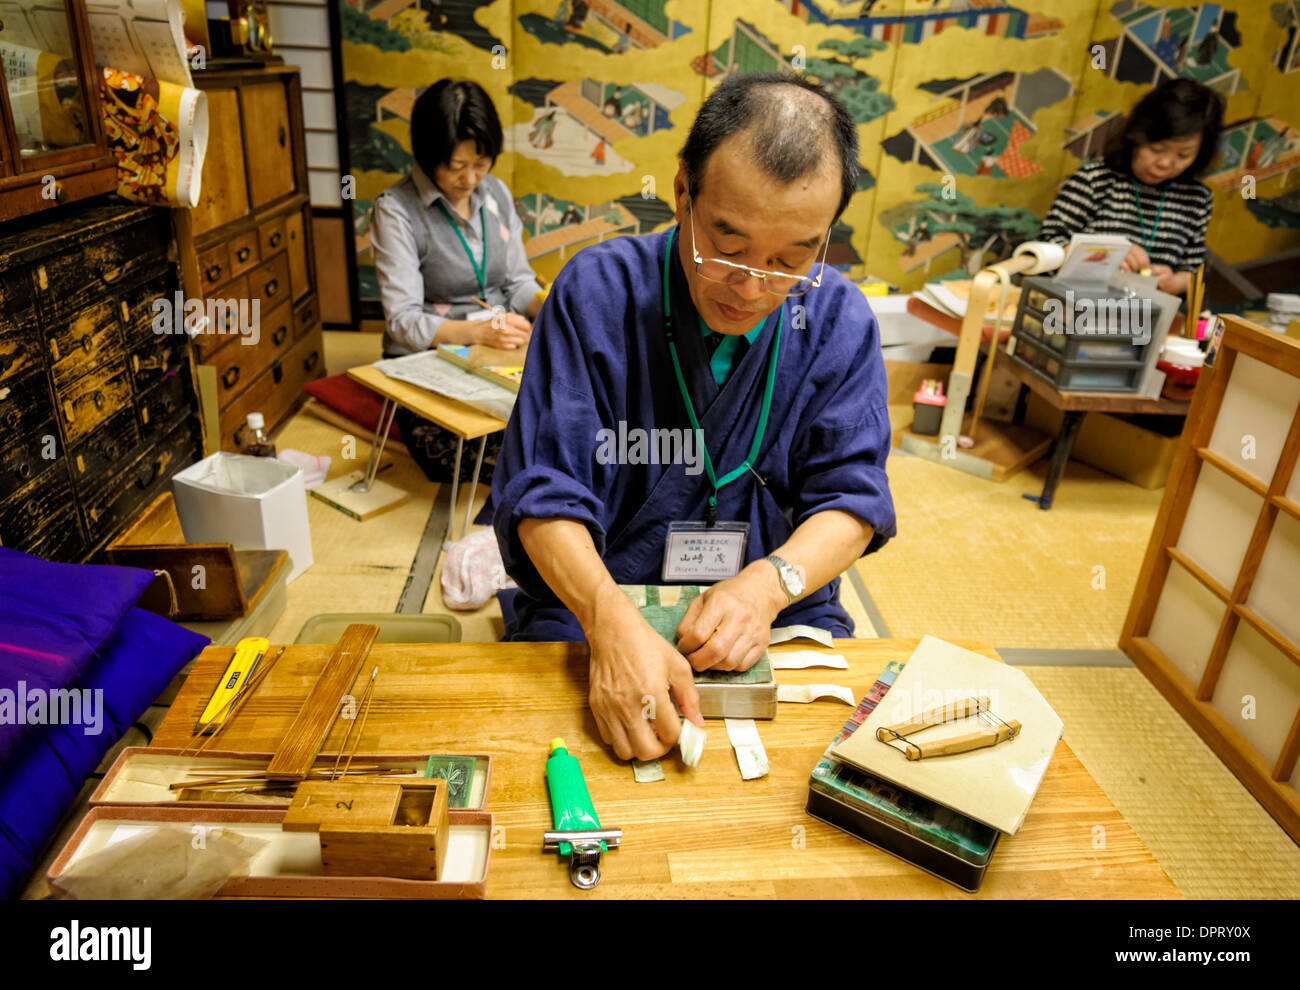 Esperto artigiano giapponese prepara strati di oro pronto a rendere la foglia di oro, una vecchia tradizione giapponese. Kinpaku Kanazawa Giappone artigiano craft Foto Stock